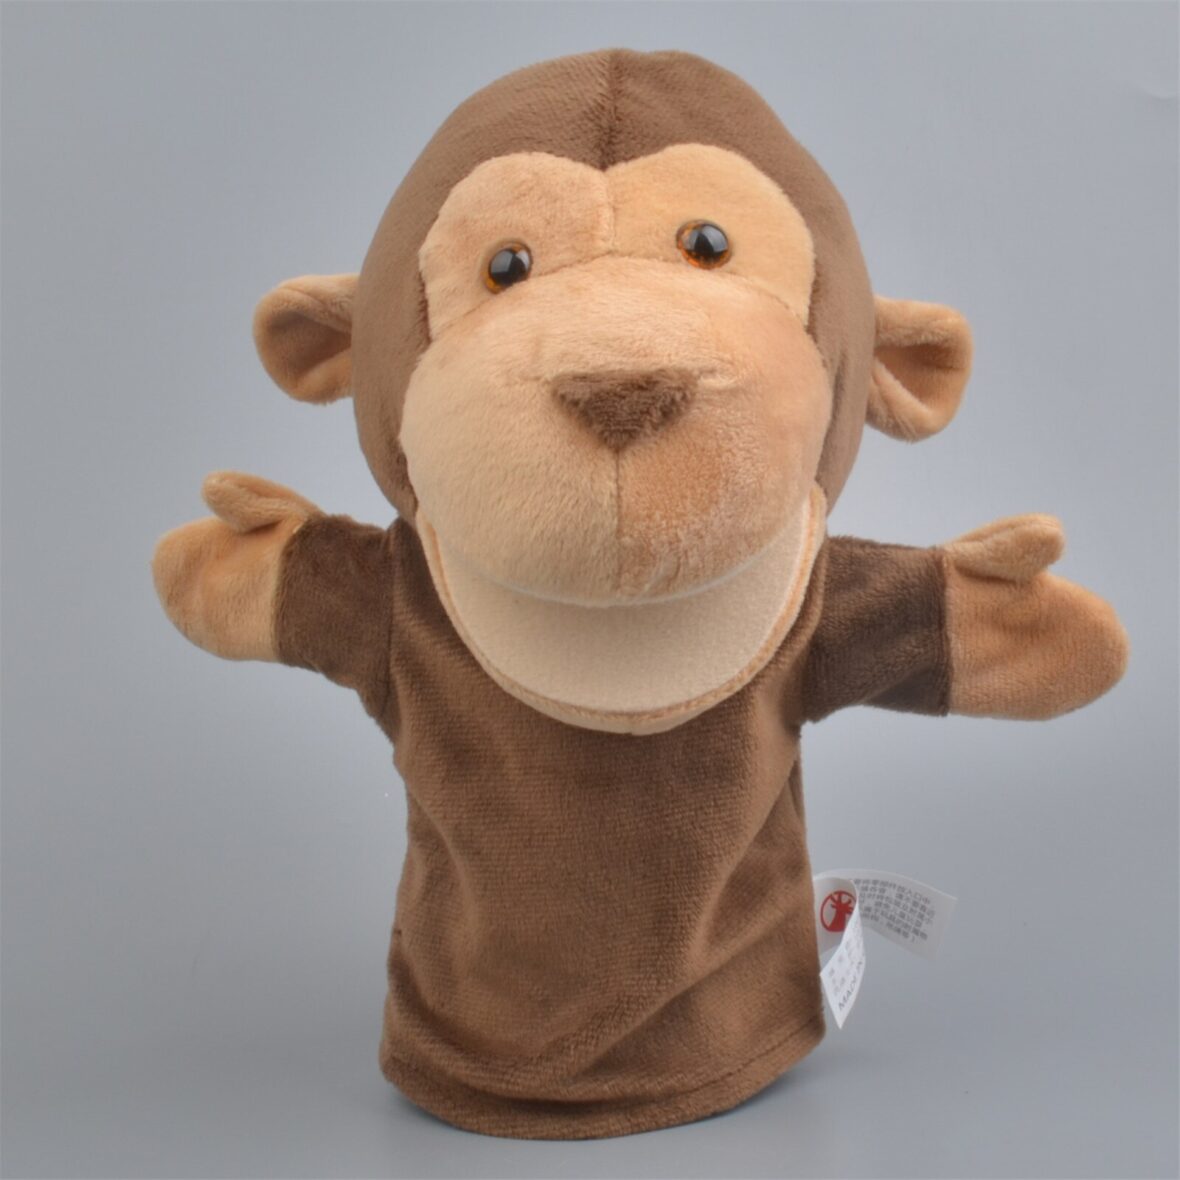 20cm Monkey Soft Plush Stuffed Hand Puppet